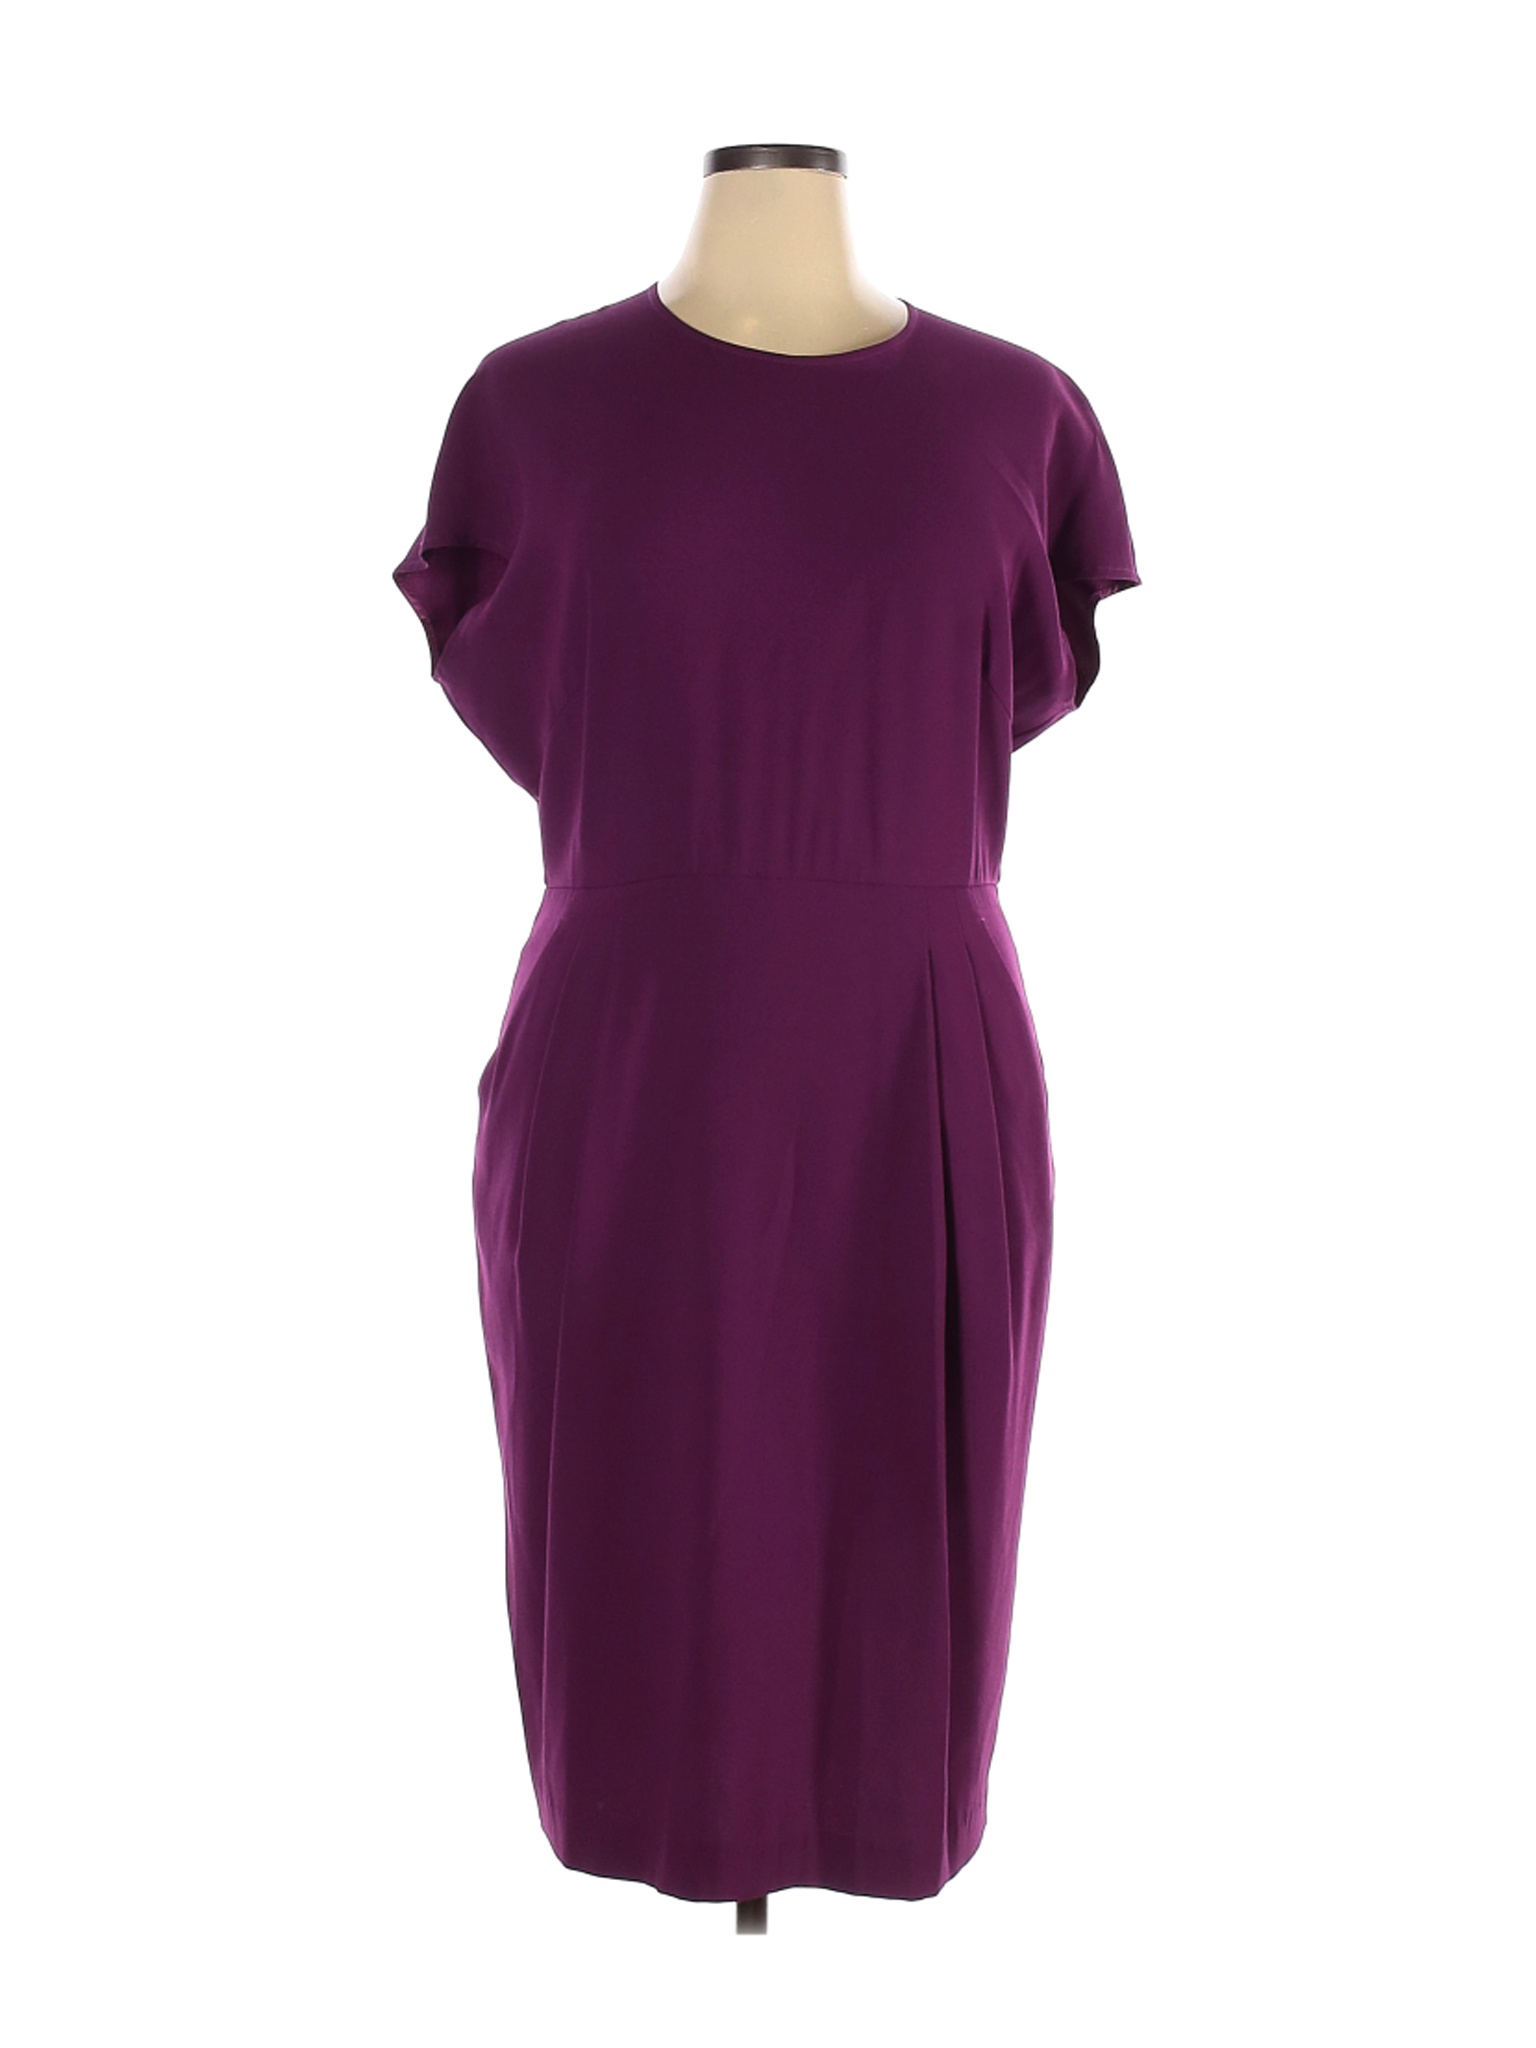 MM. LaFleur Women Purple Cocktail Dress 16 | eBay